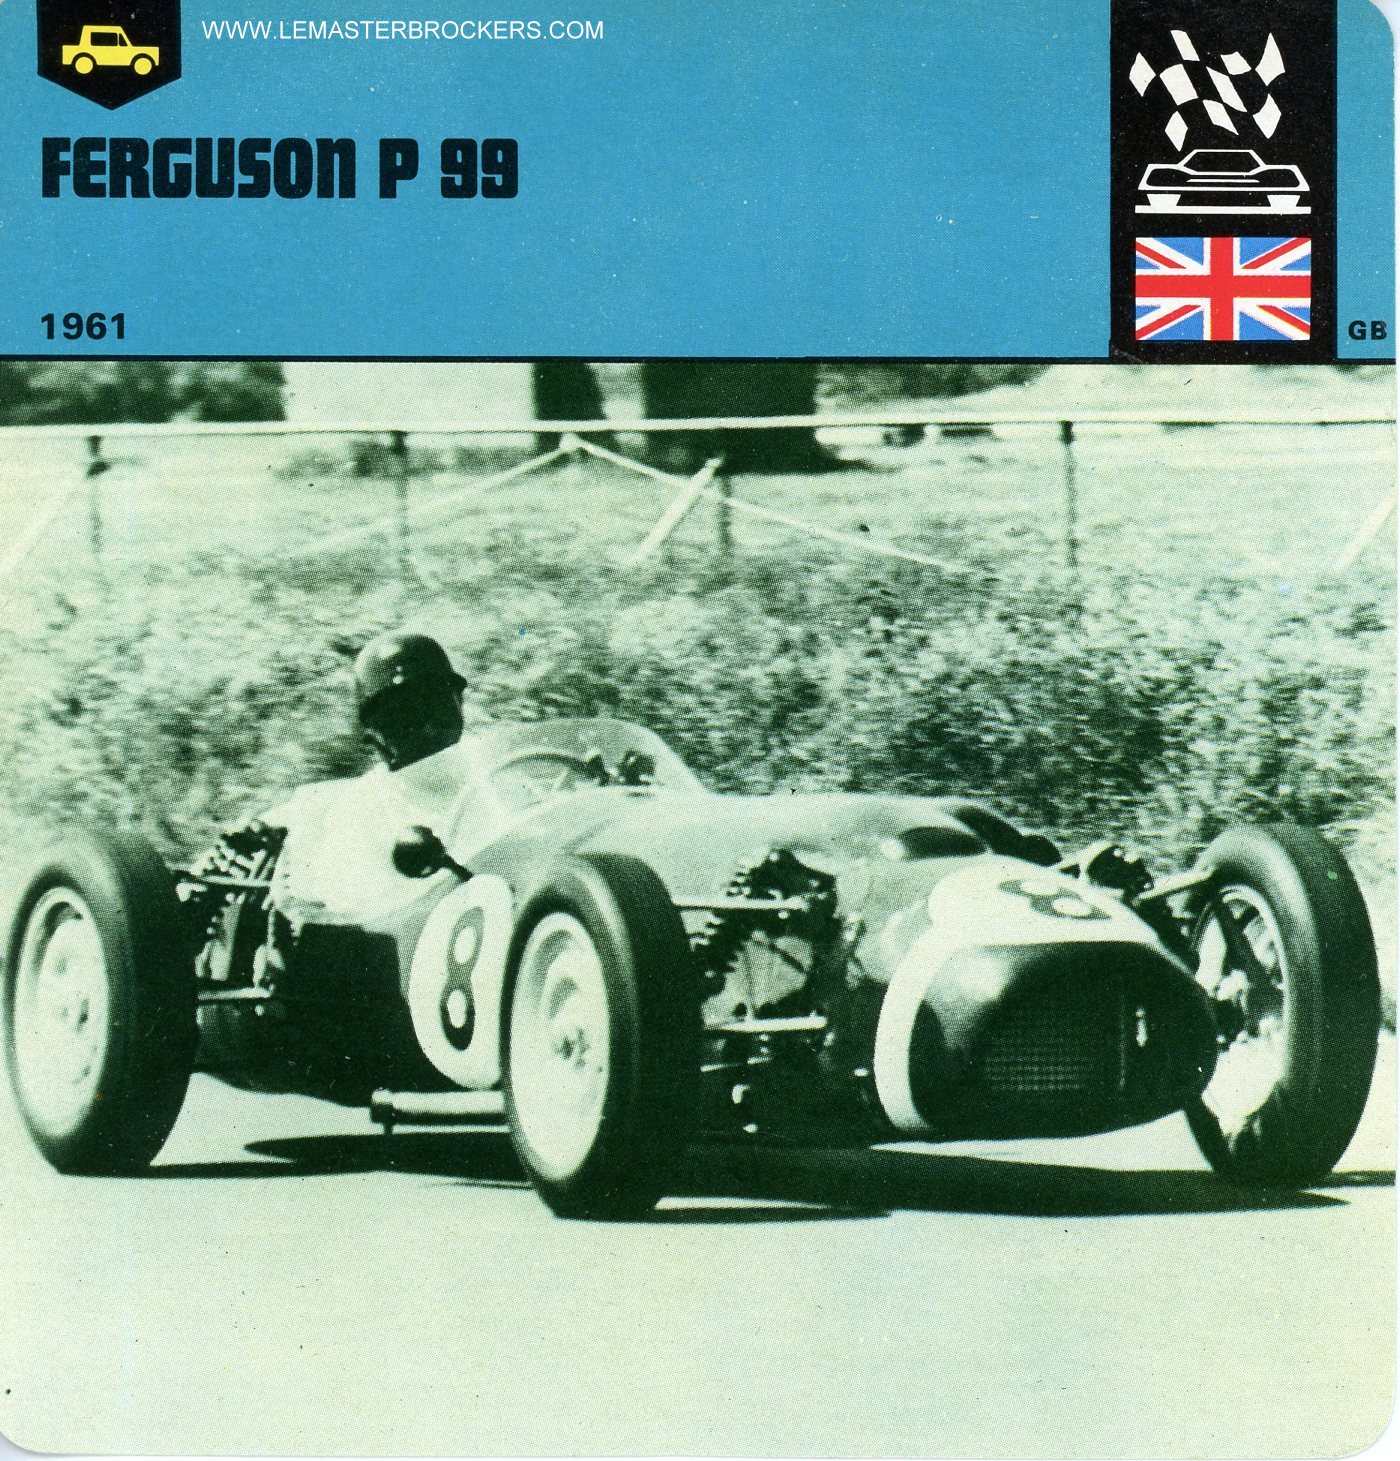 FICHE AUTO PERGUSON P99  1961 - ILLUSTRATION JACQUES FAIRMAN